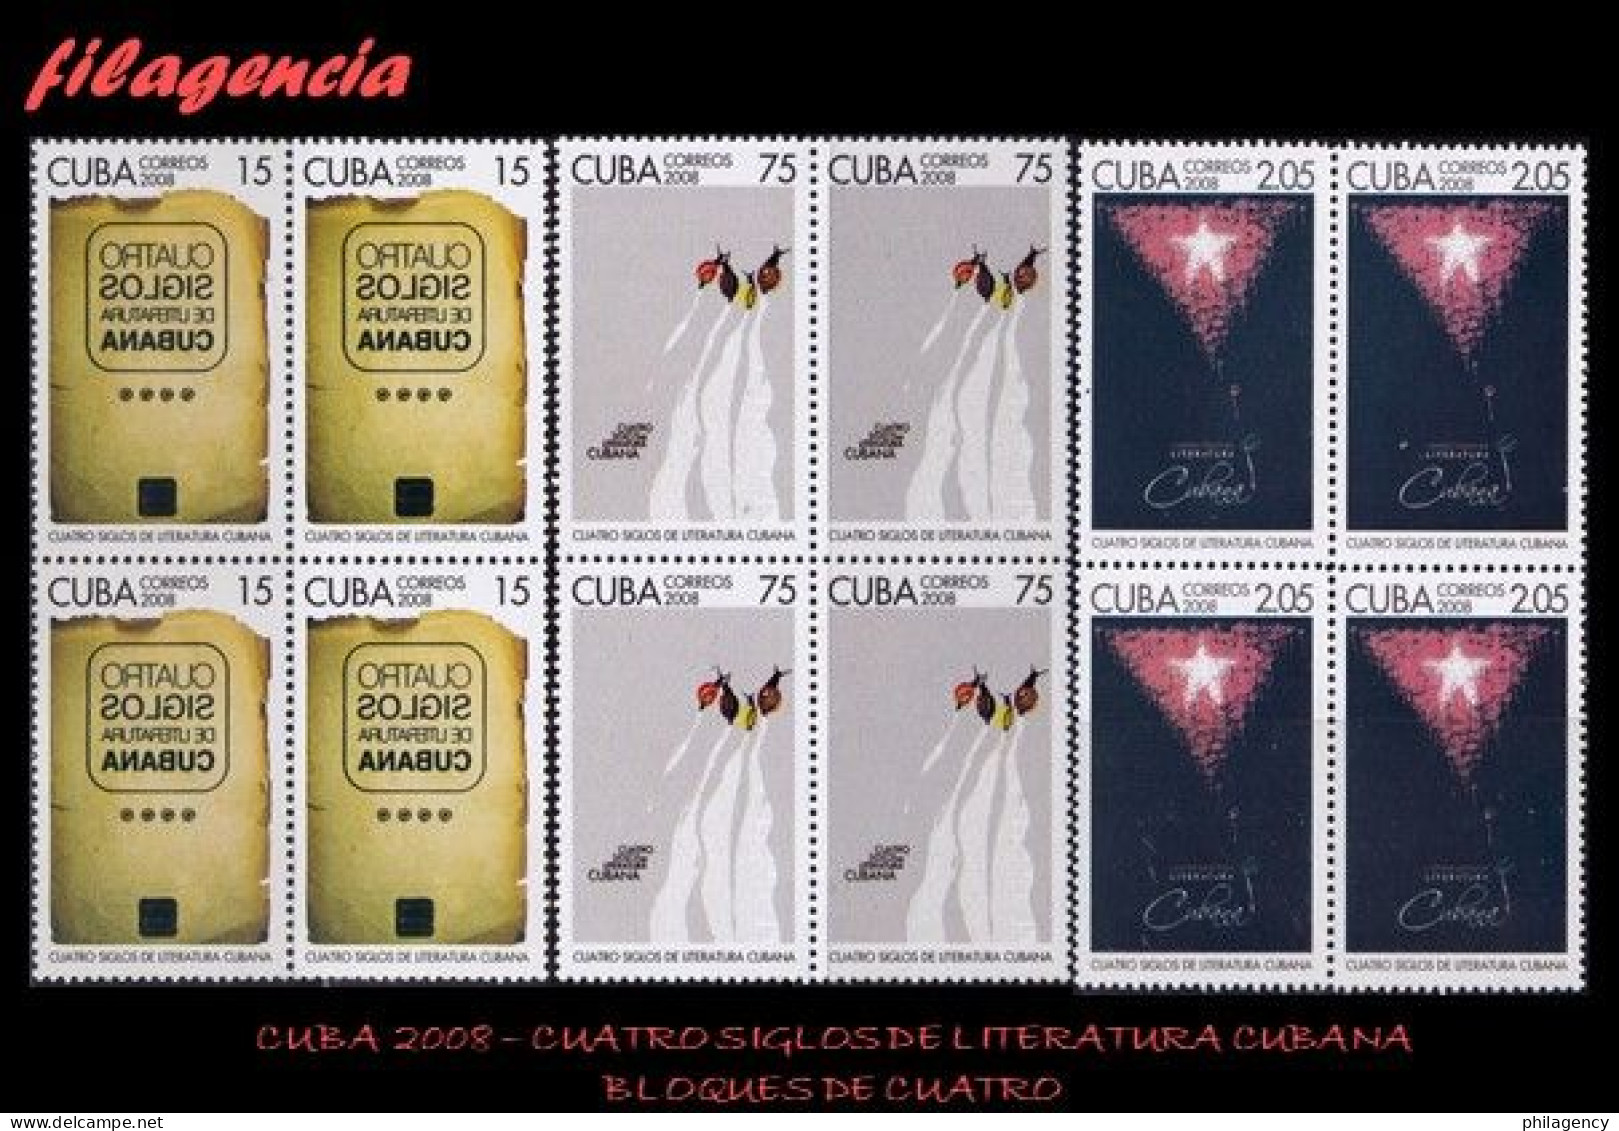 CUBA. BLOQUES DE CUATRO. 2008-28 CUATRO SIGLOS DE LITERATURA CUBANA - Nuevos